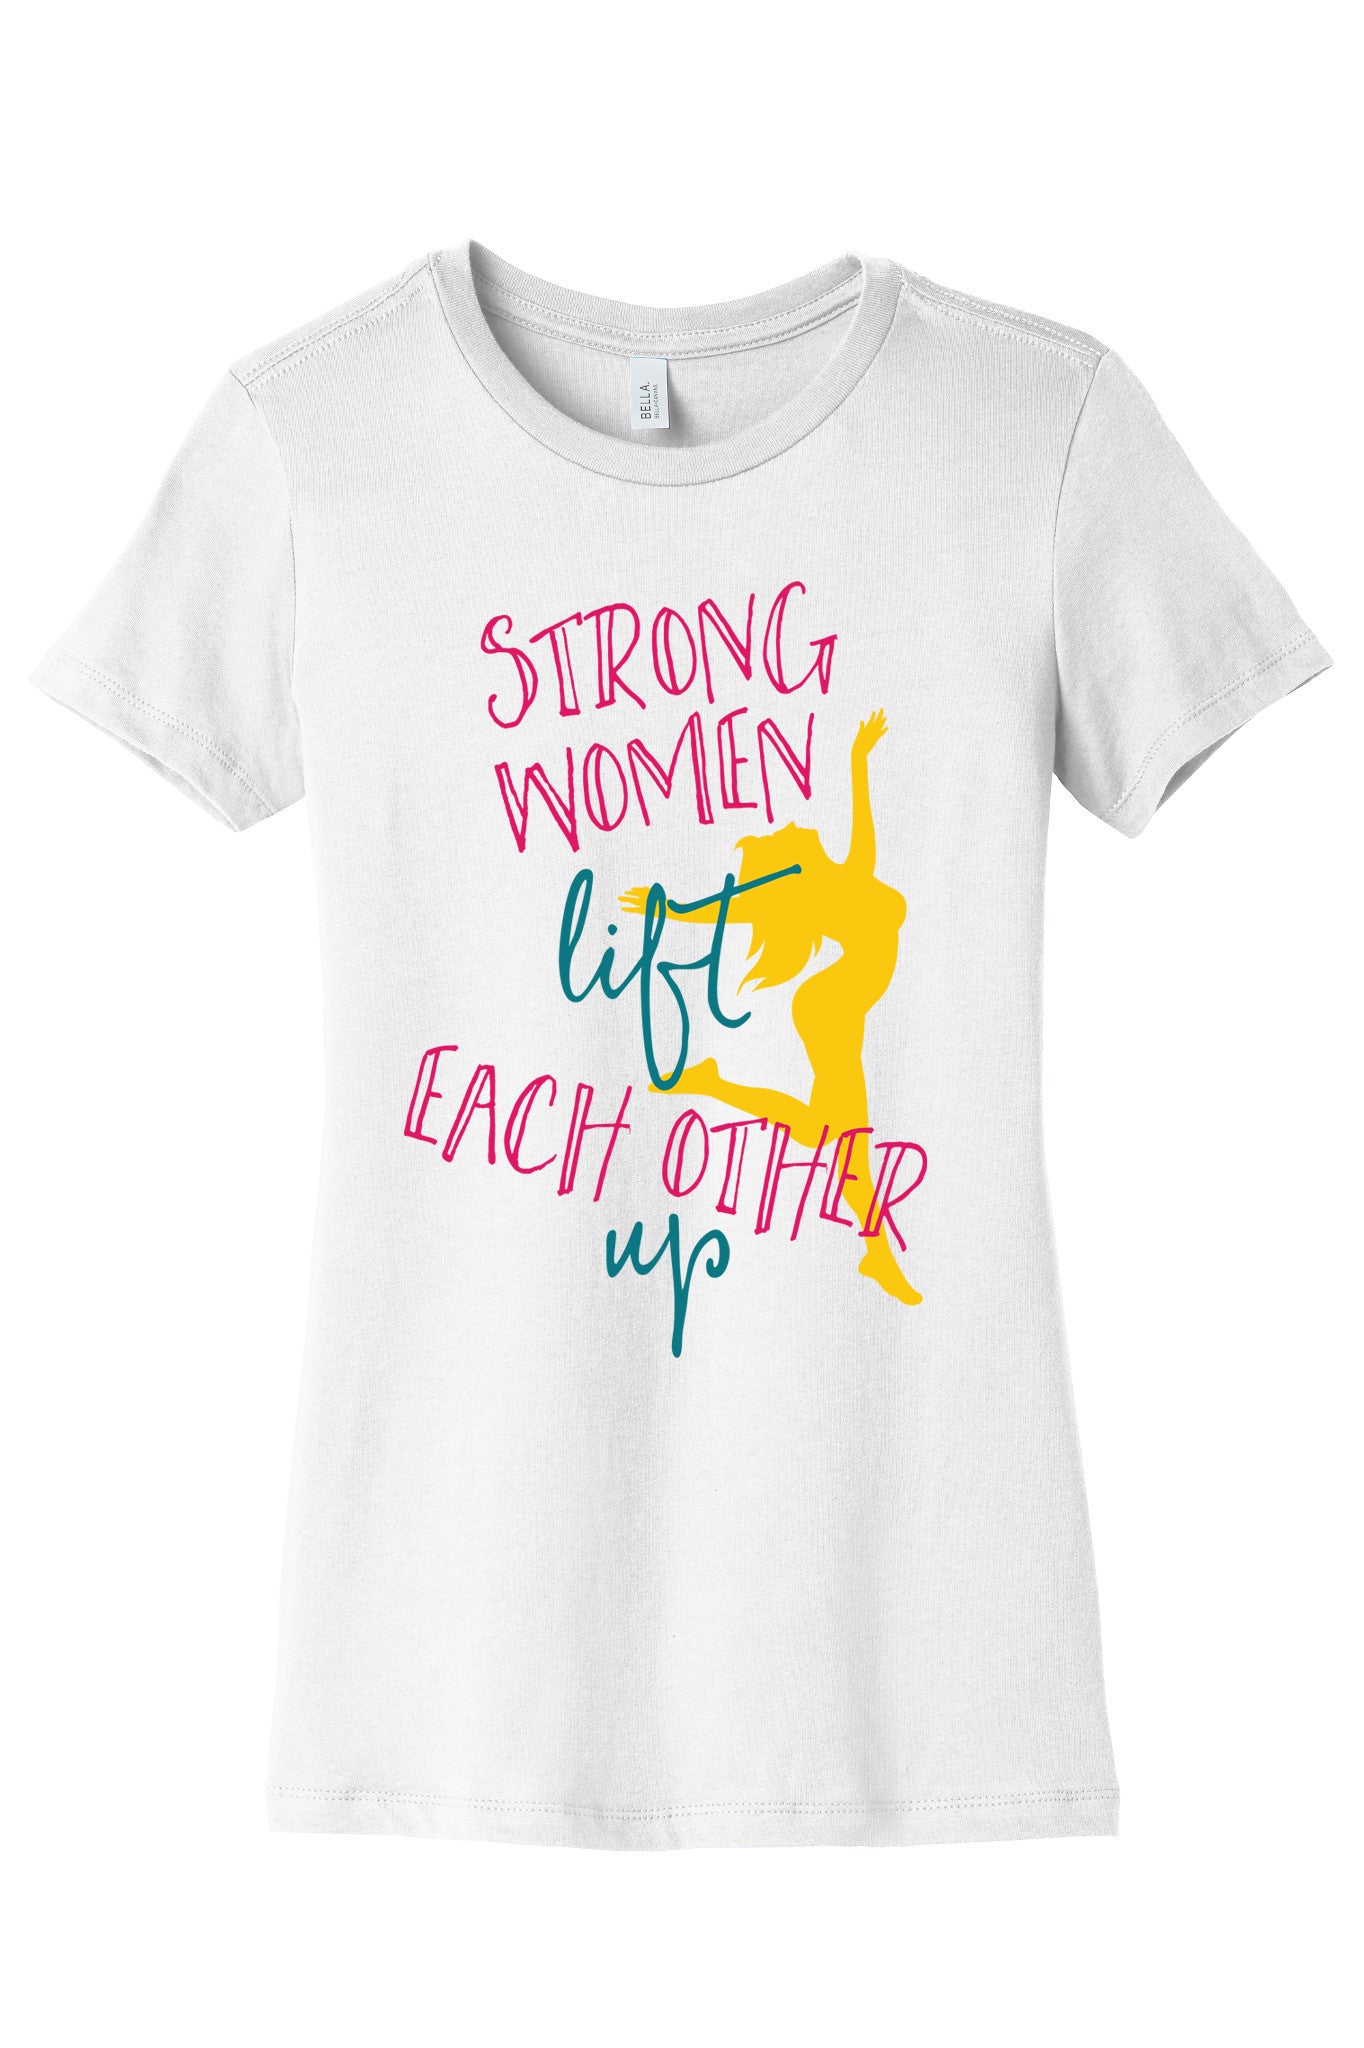 Strong Women Lift